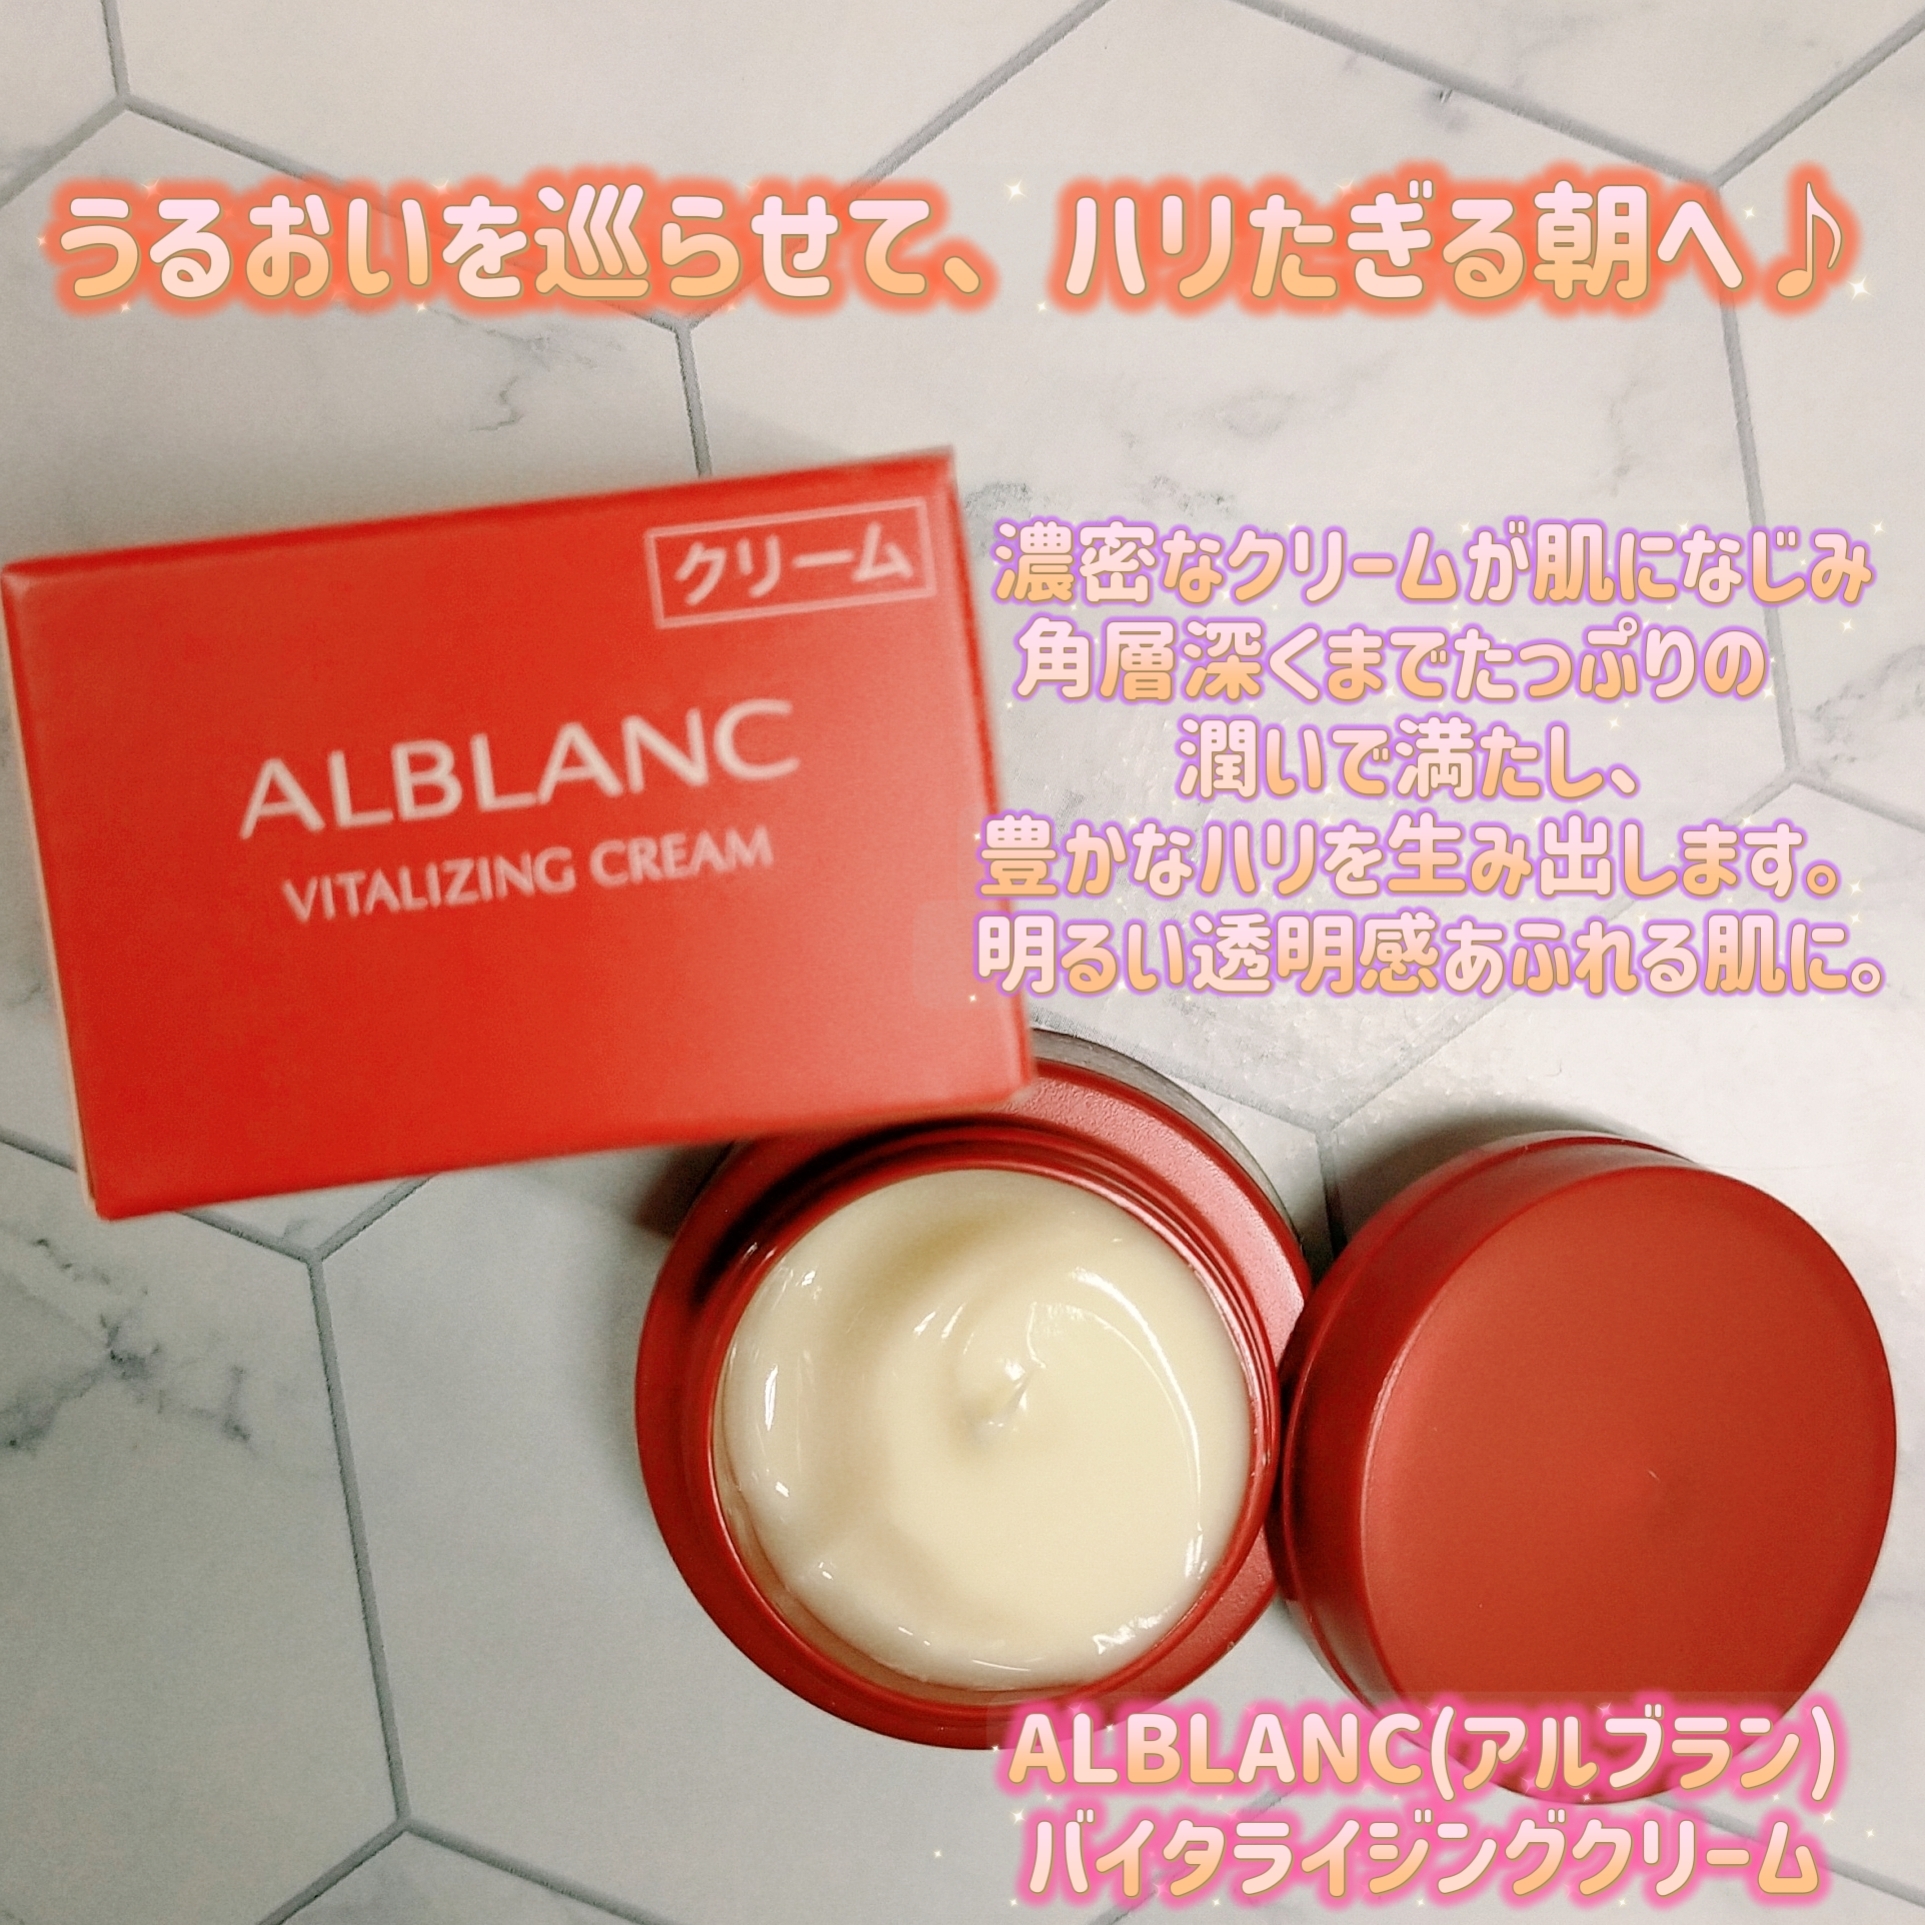 ALBLANC(アルブラン) 薬用バイタライジングクリームの良い点・メリットに関するみこさんの口コミ画像1